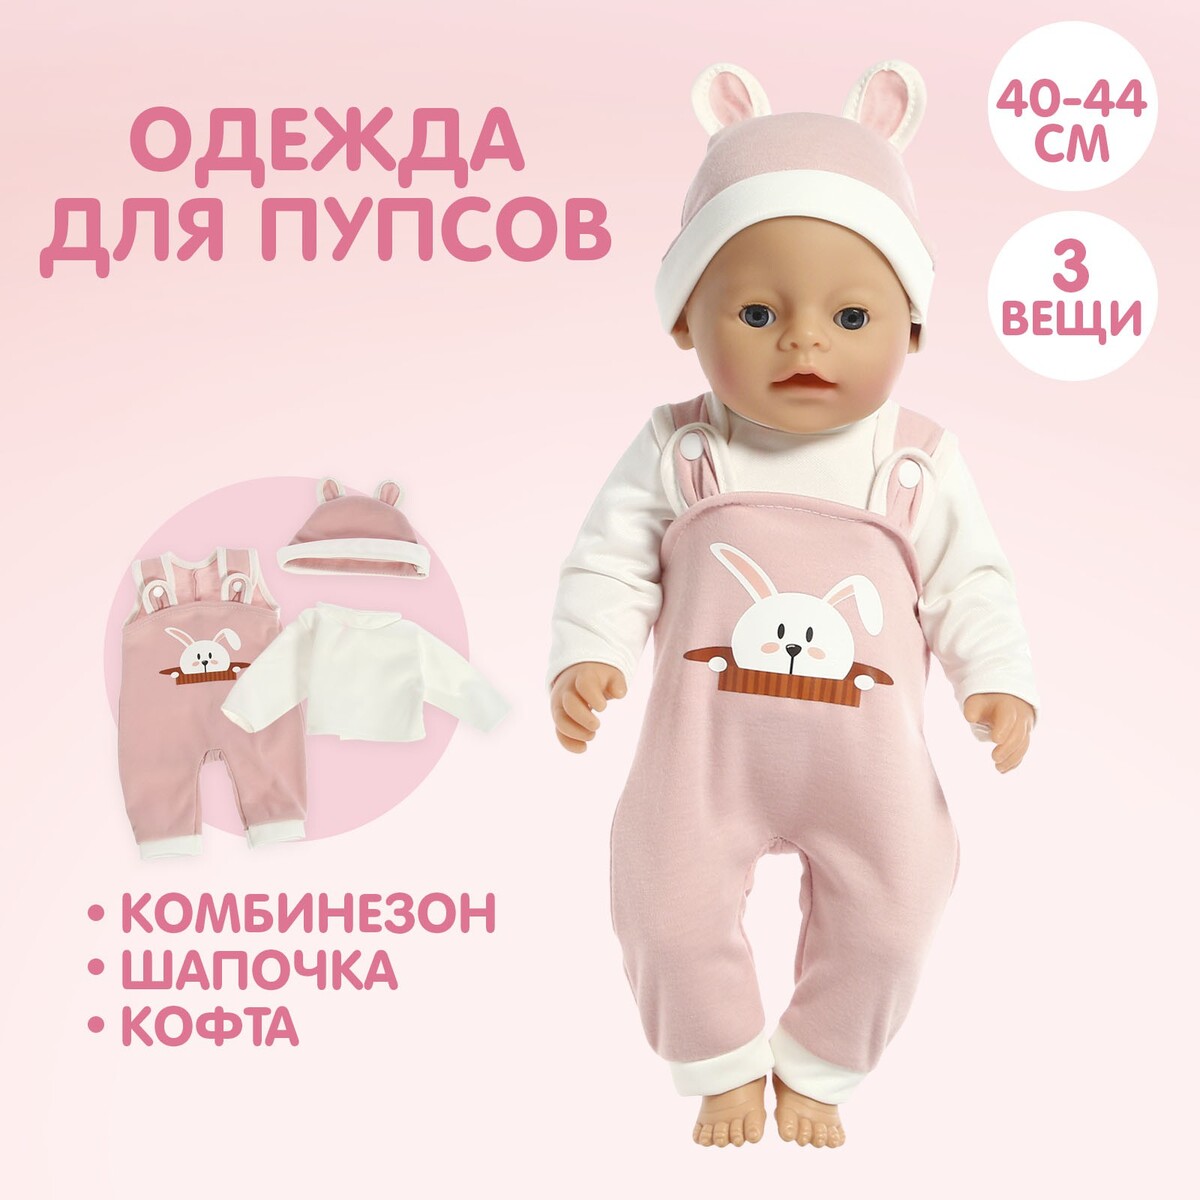 Пижама для кукол 40-44 см, 3 вещи, текстиль, на липучках простые вещи